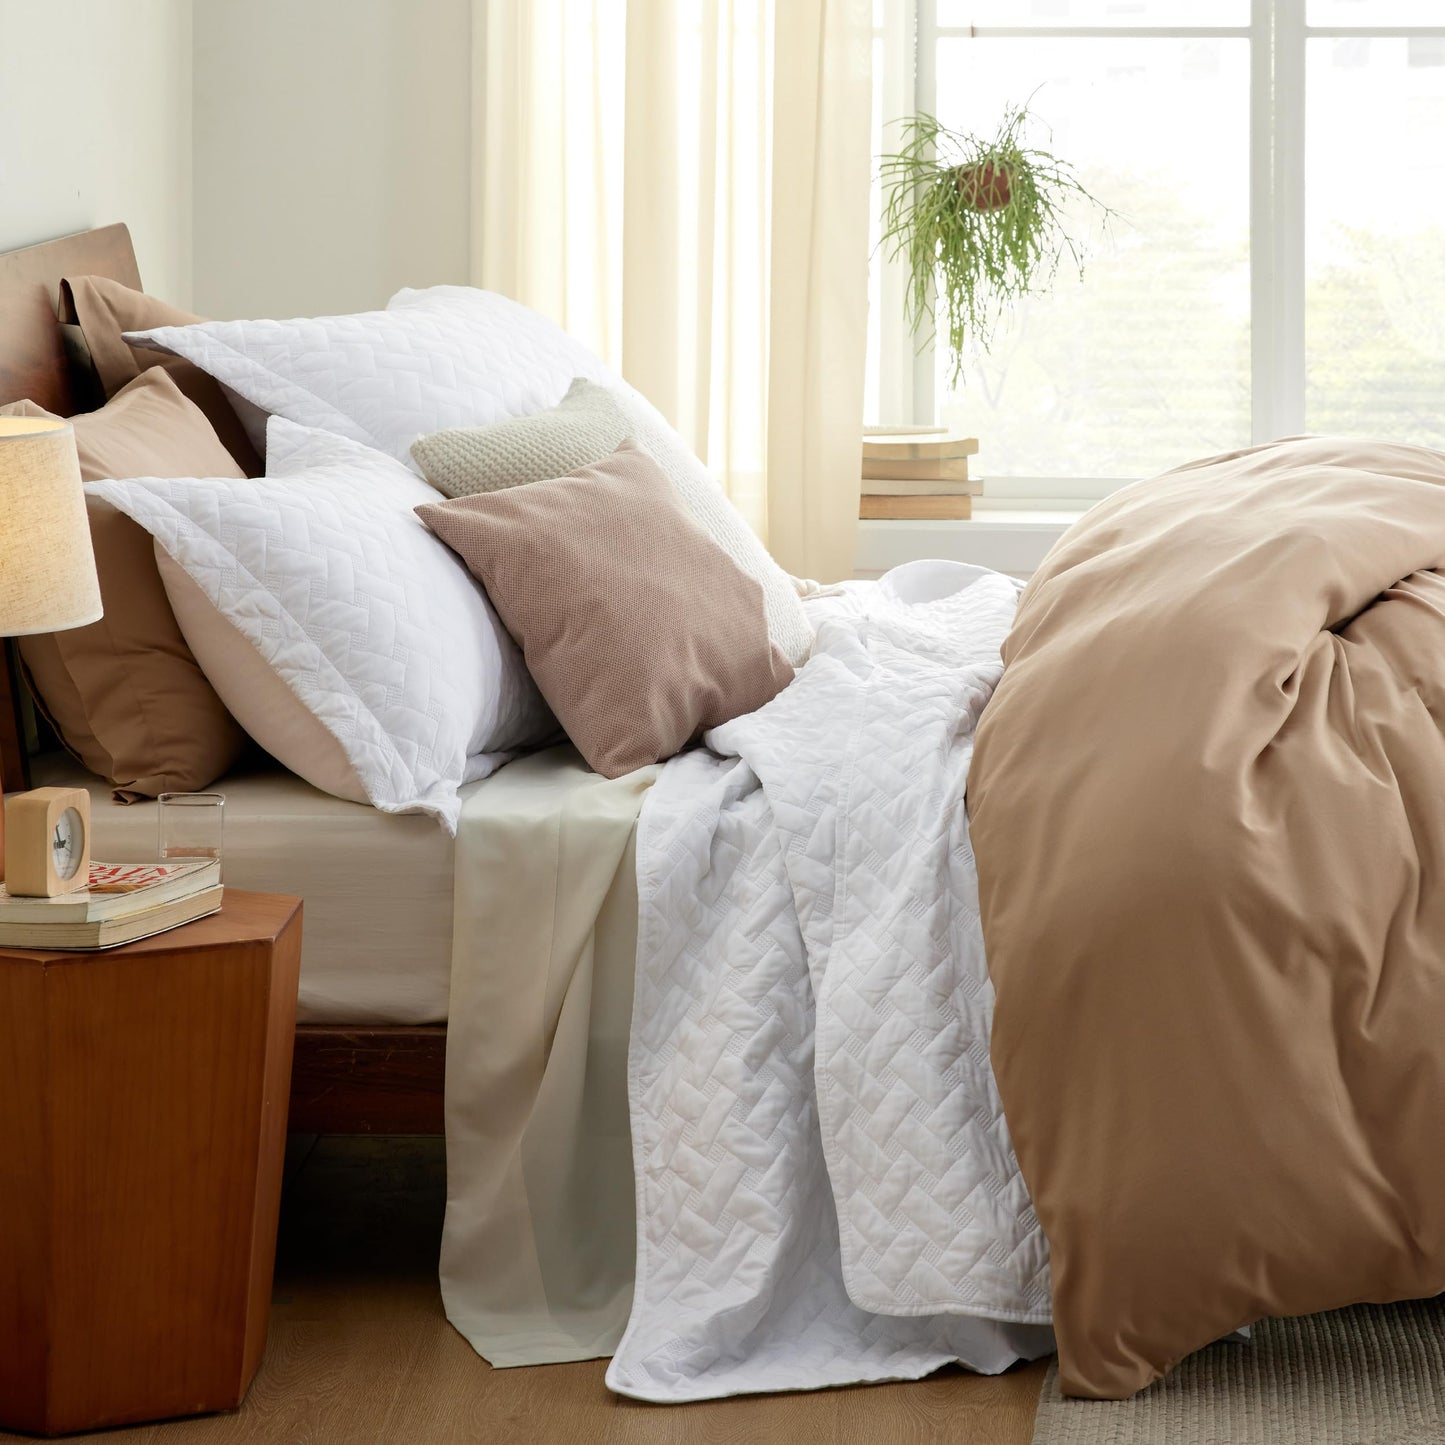 Bedsure Queen Quilt Bedding Set - Lightweight Spring Quilt Full/Queen - Light Beige Bedspread Queen Size - Bedding Coverlet for All Seasons (Includes 1 Quilt, 2 Pillow Shams)